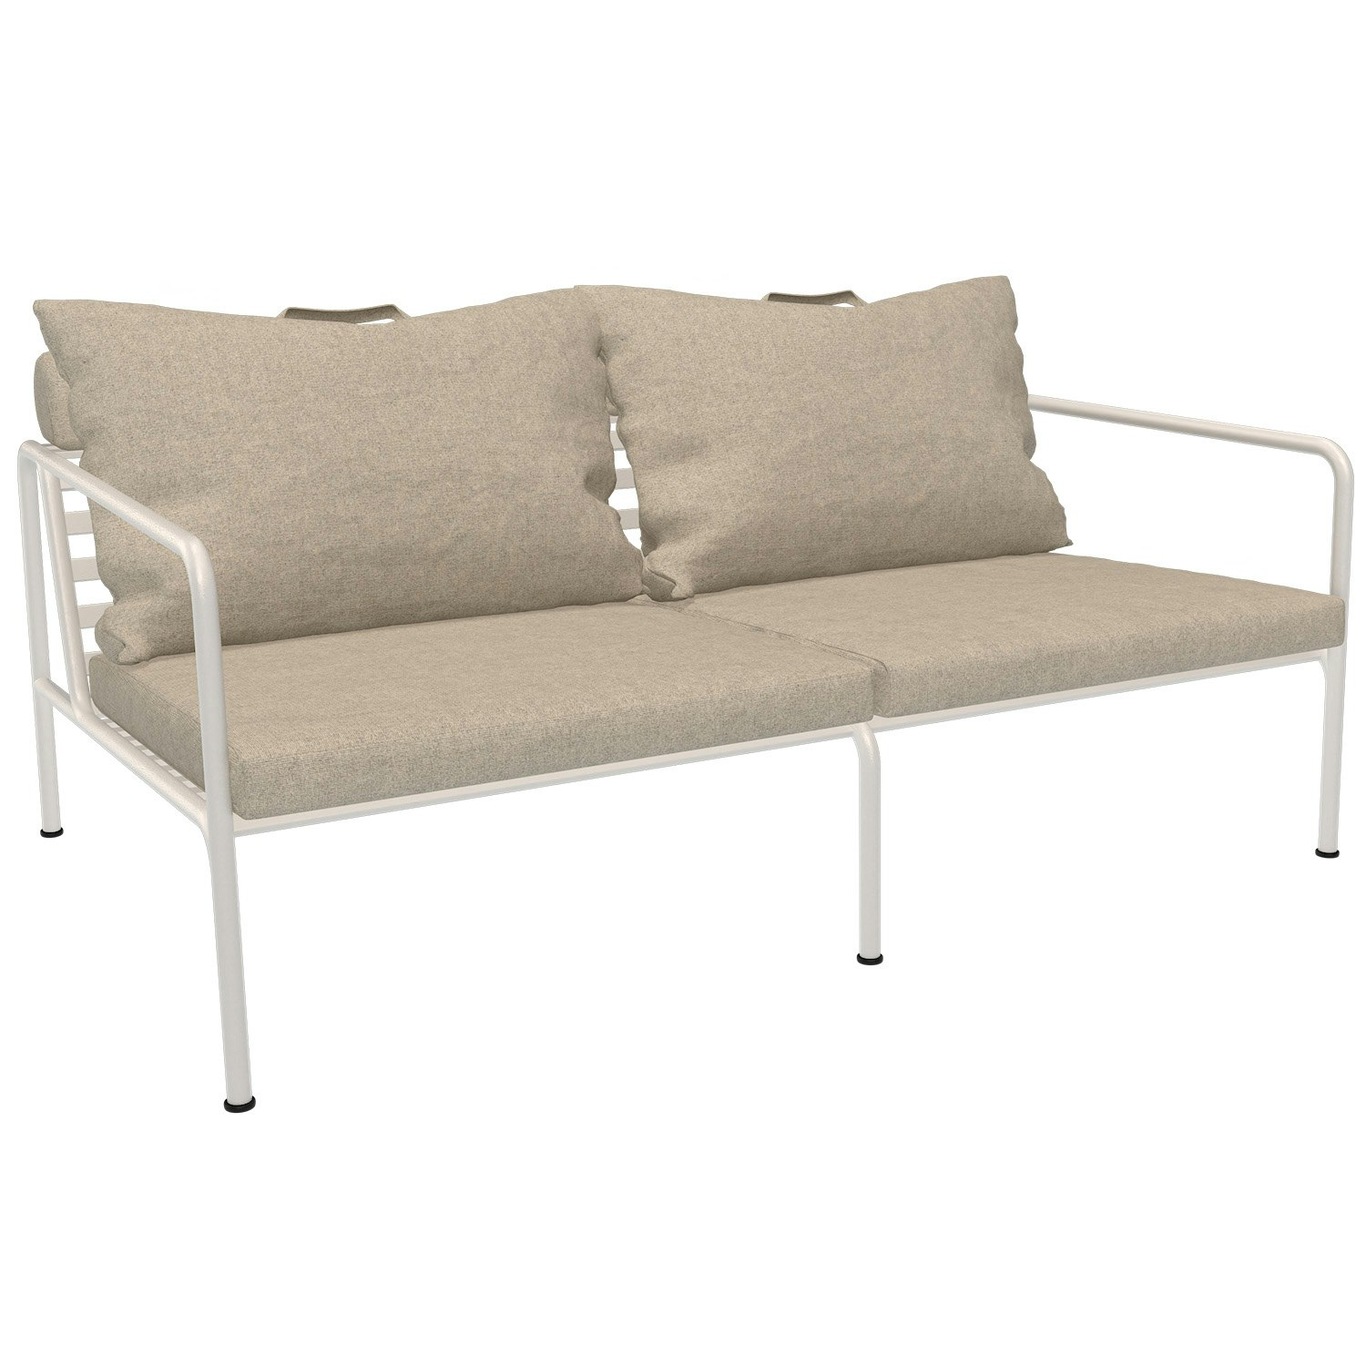 Avon 2-Seter Sofa, Papyrus / Muted White